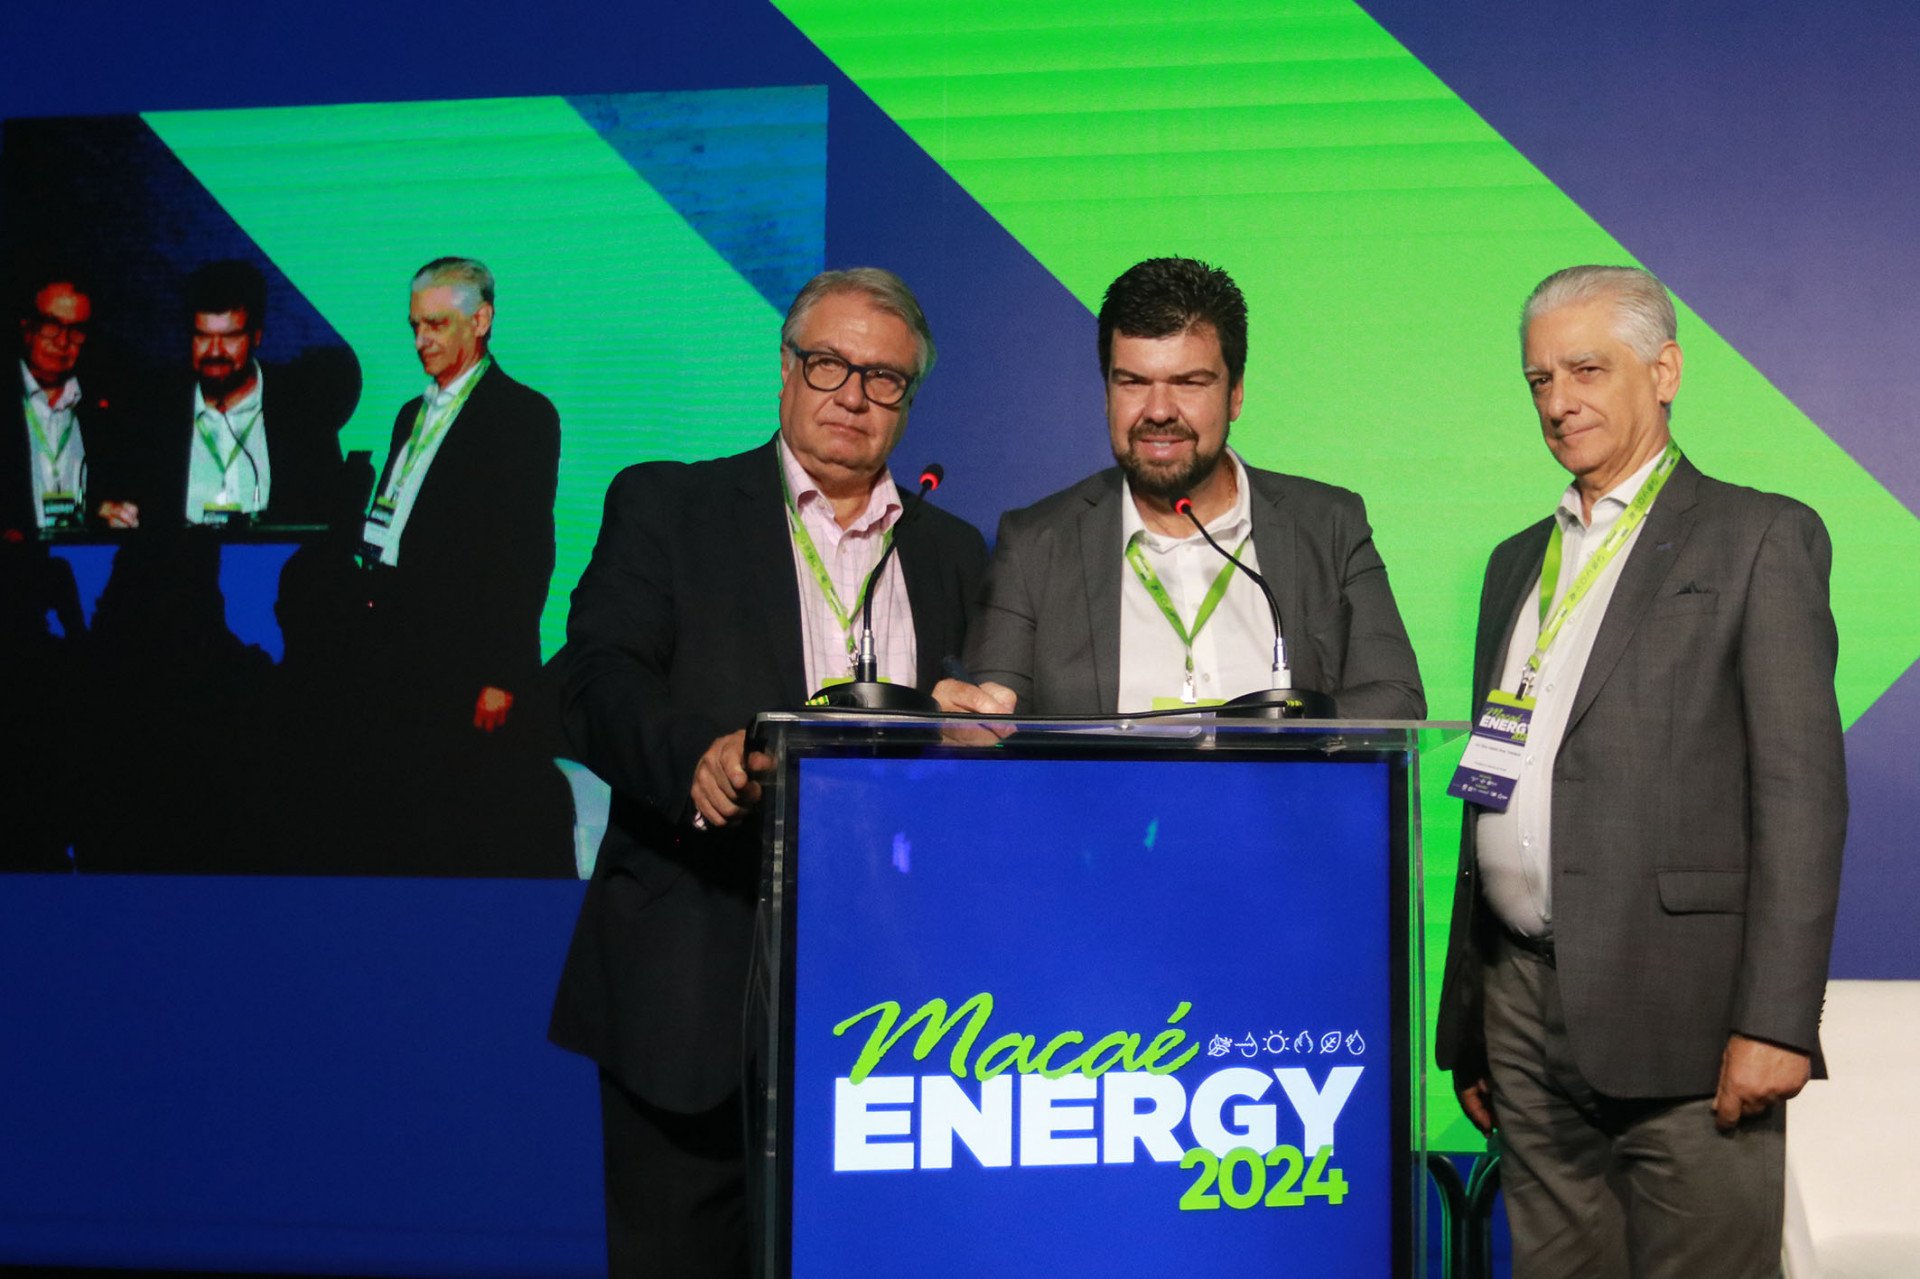 Macaé Energy pauta discussões sobre Transição e Segurança Energética no Brasil  - Foto: Divulgação